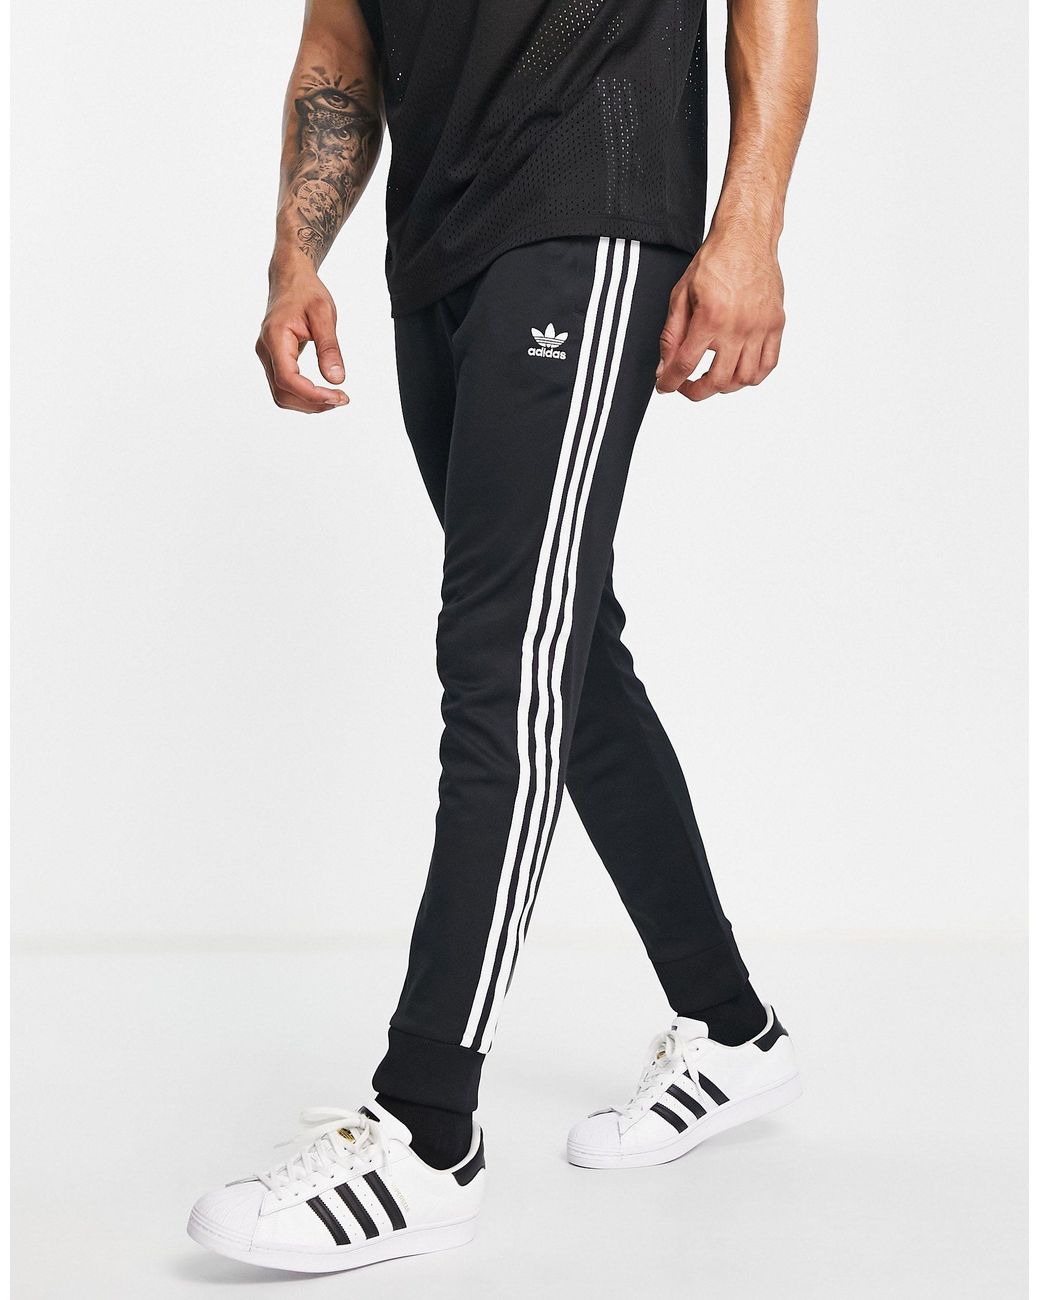 adidas Originals – adicolor primeblue – eng geschnittene jogginghose mit  den drei streifen in Schwarz für Herren - Sparen Sie 14% | Lyst DE